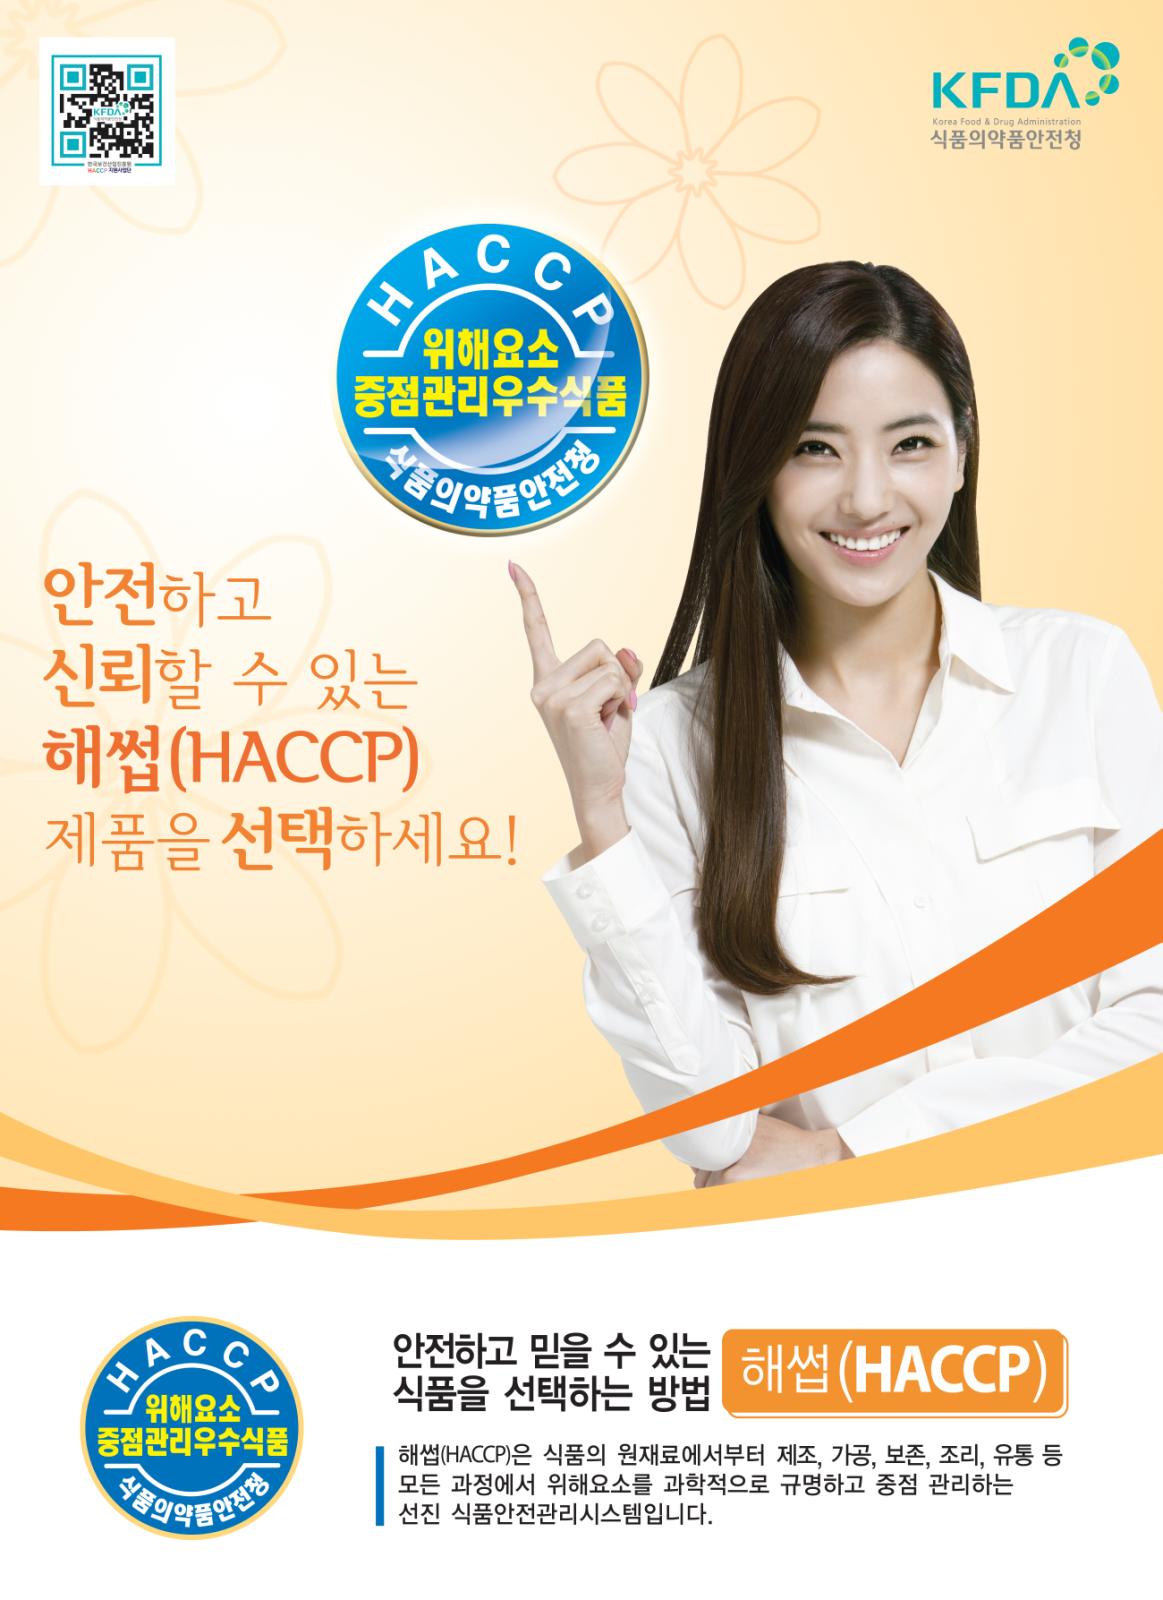 해썹(HACCP)제도 홍보 포스터의 1번째 이미지